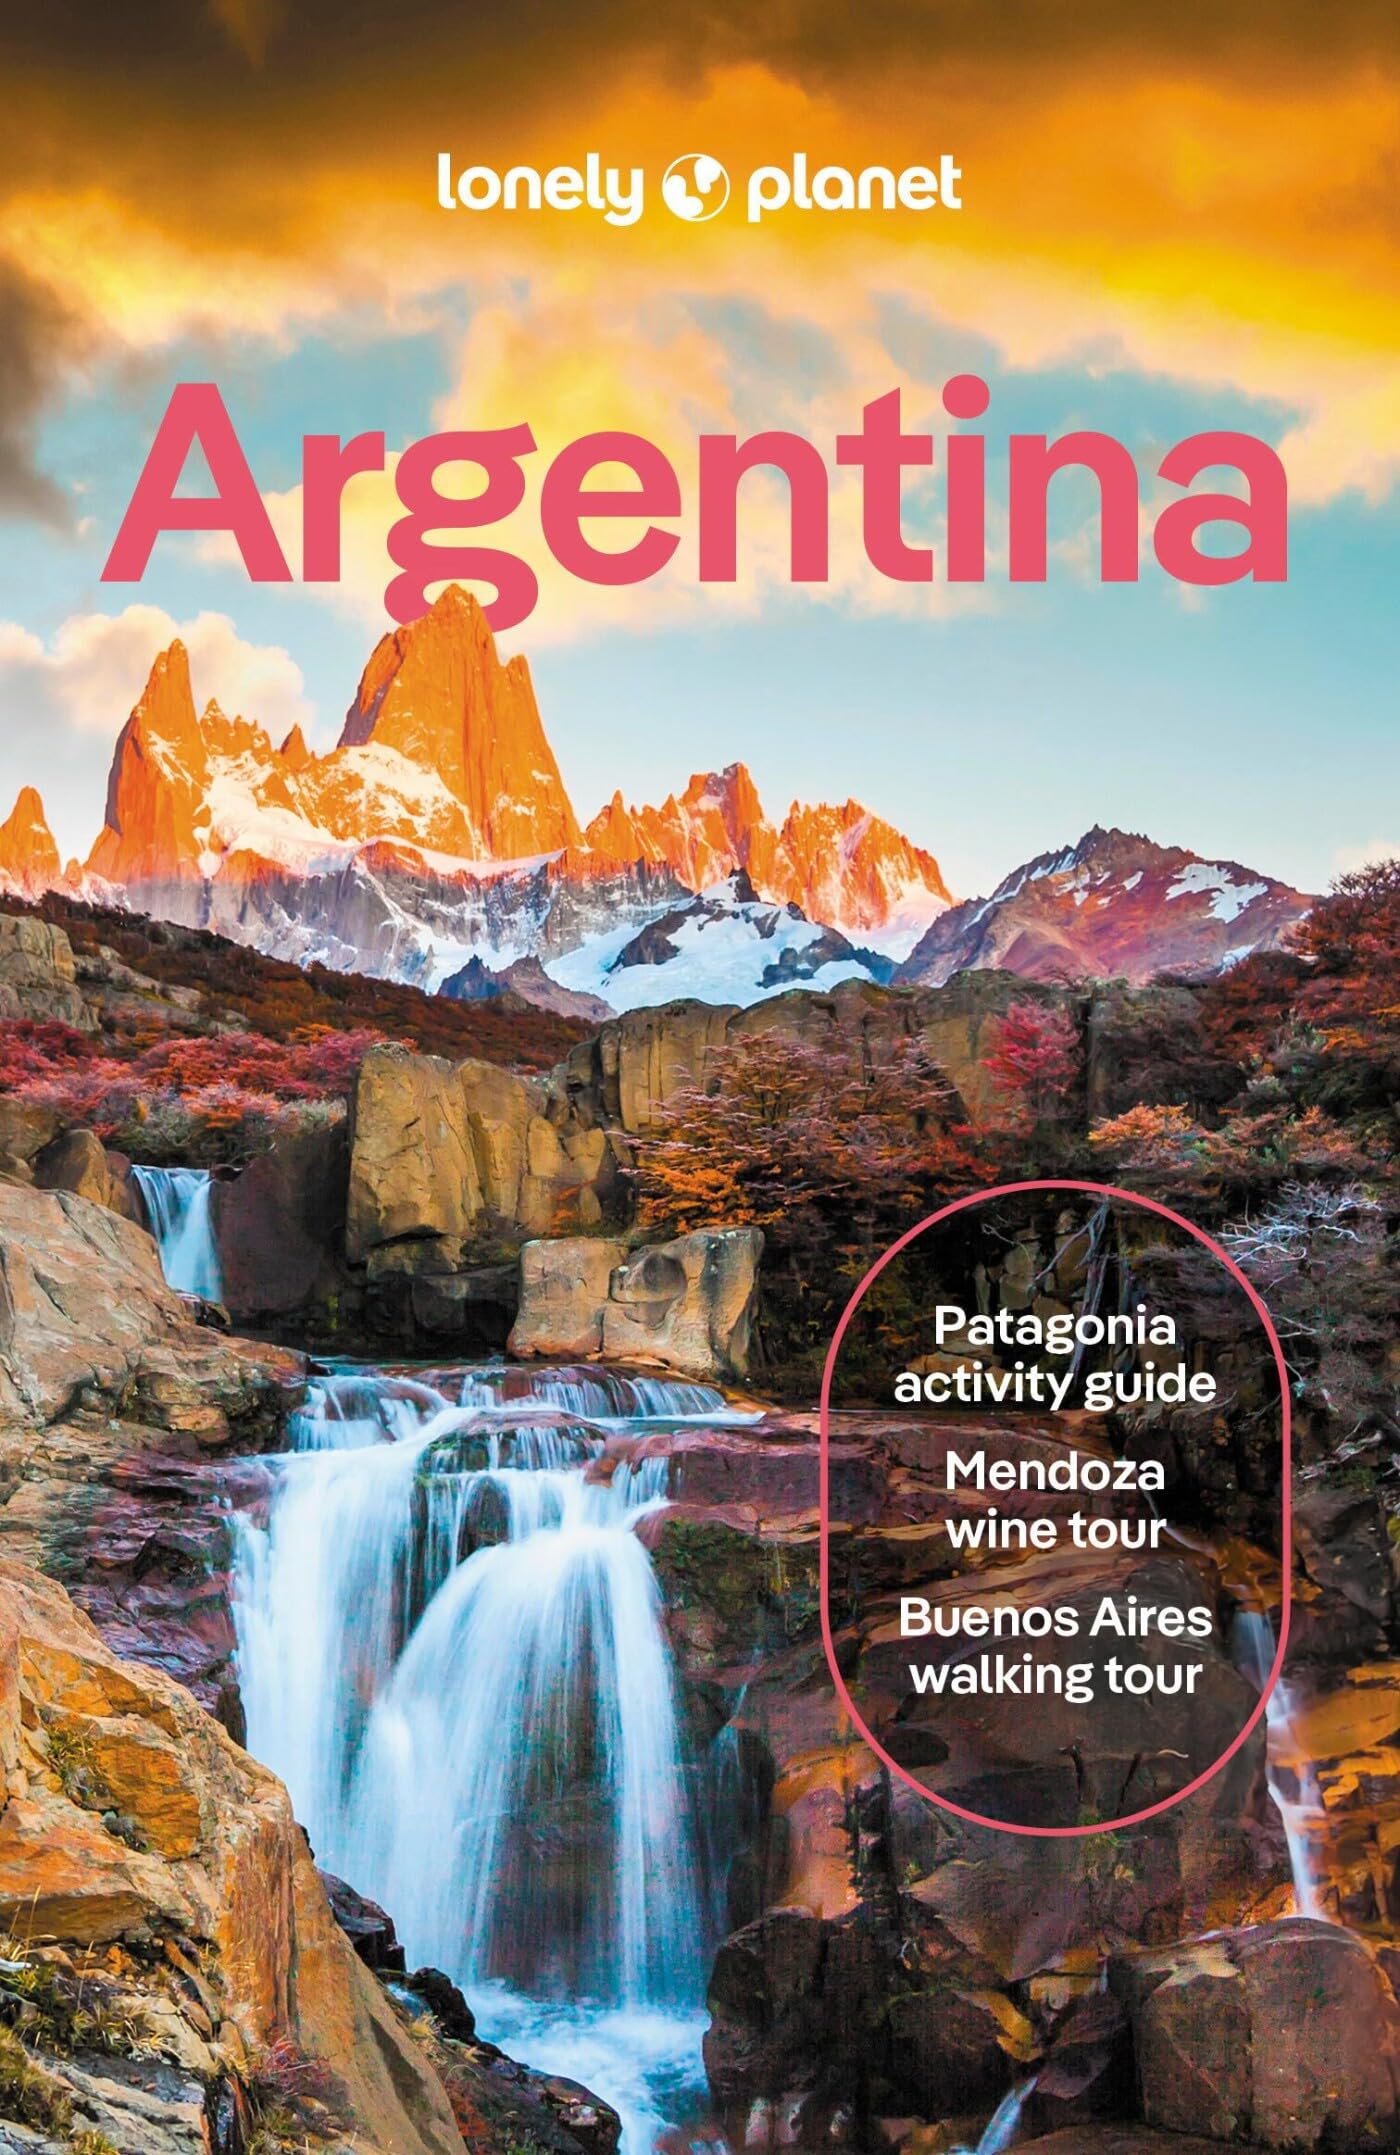 מדריך באנגלית LP ארגנטינה